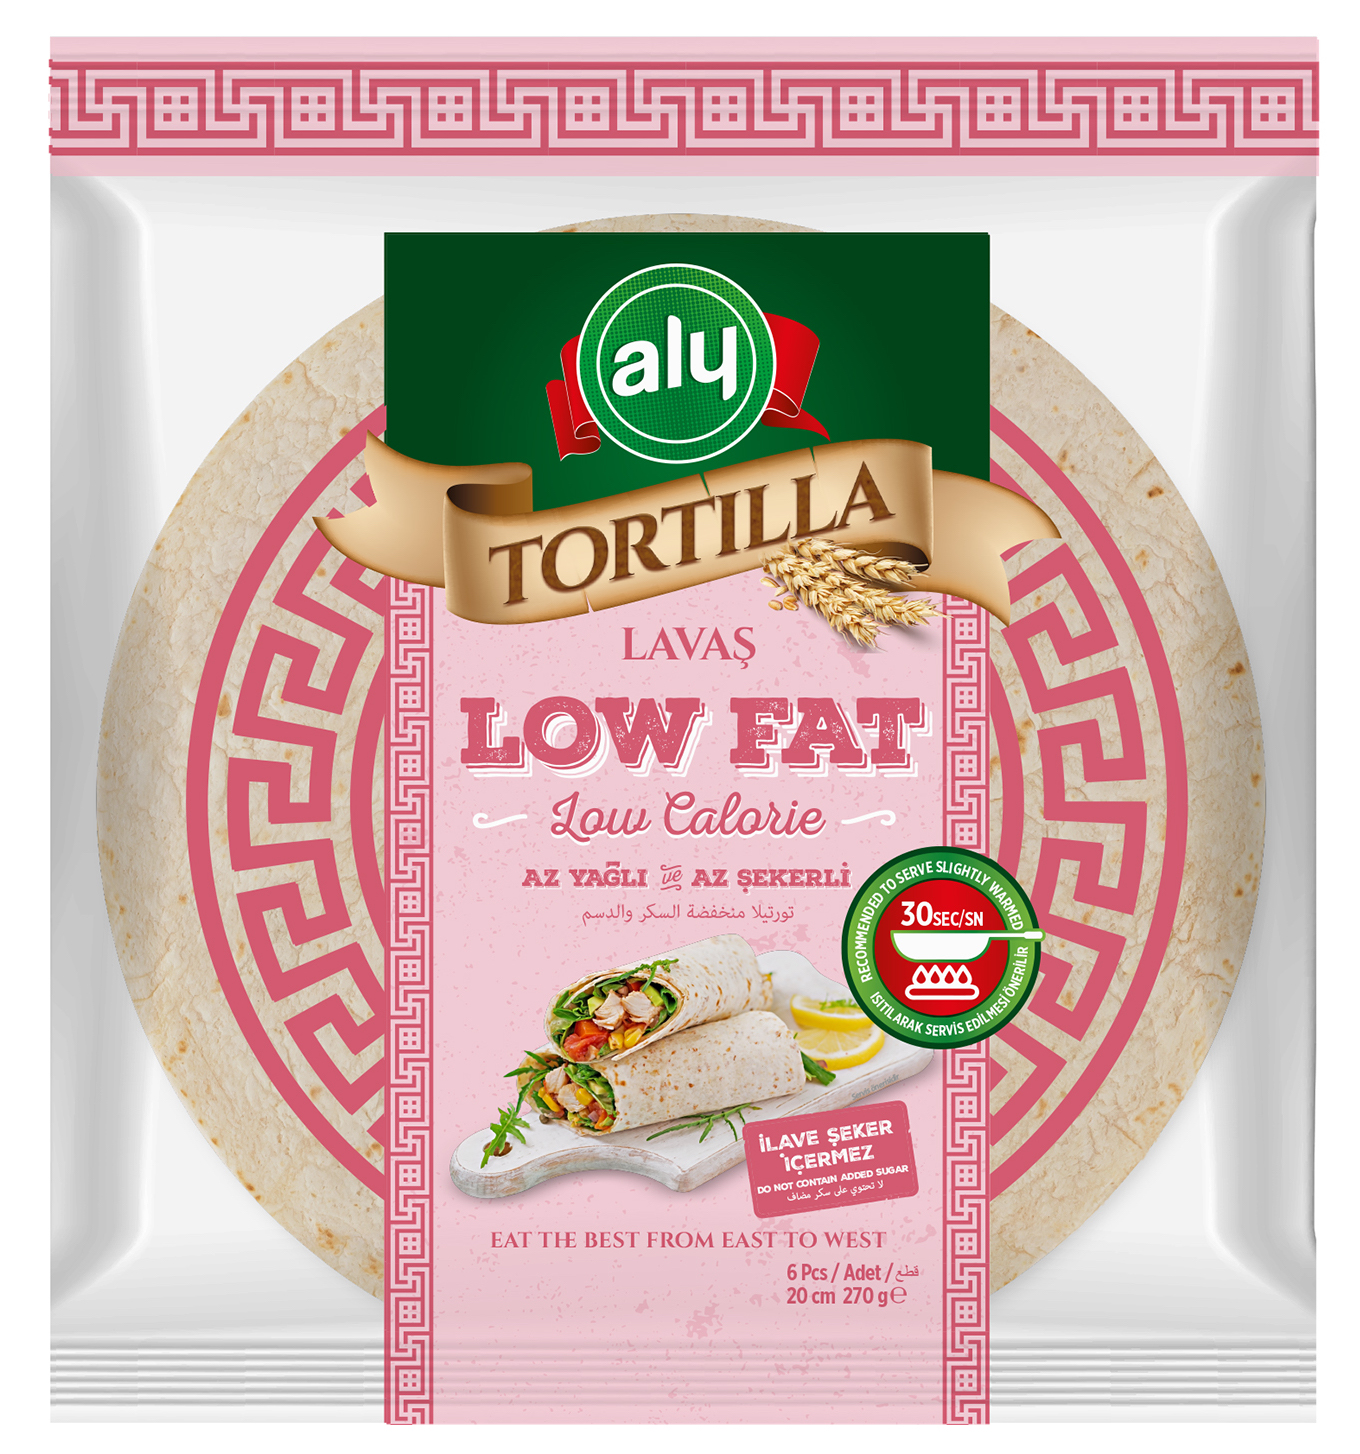 Tortilla Low Fat 20cm 270gr 6pcs/pk